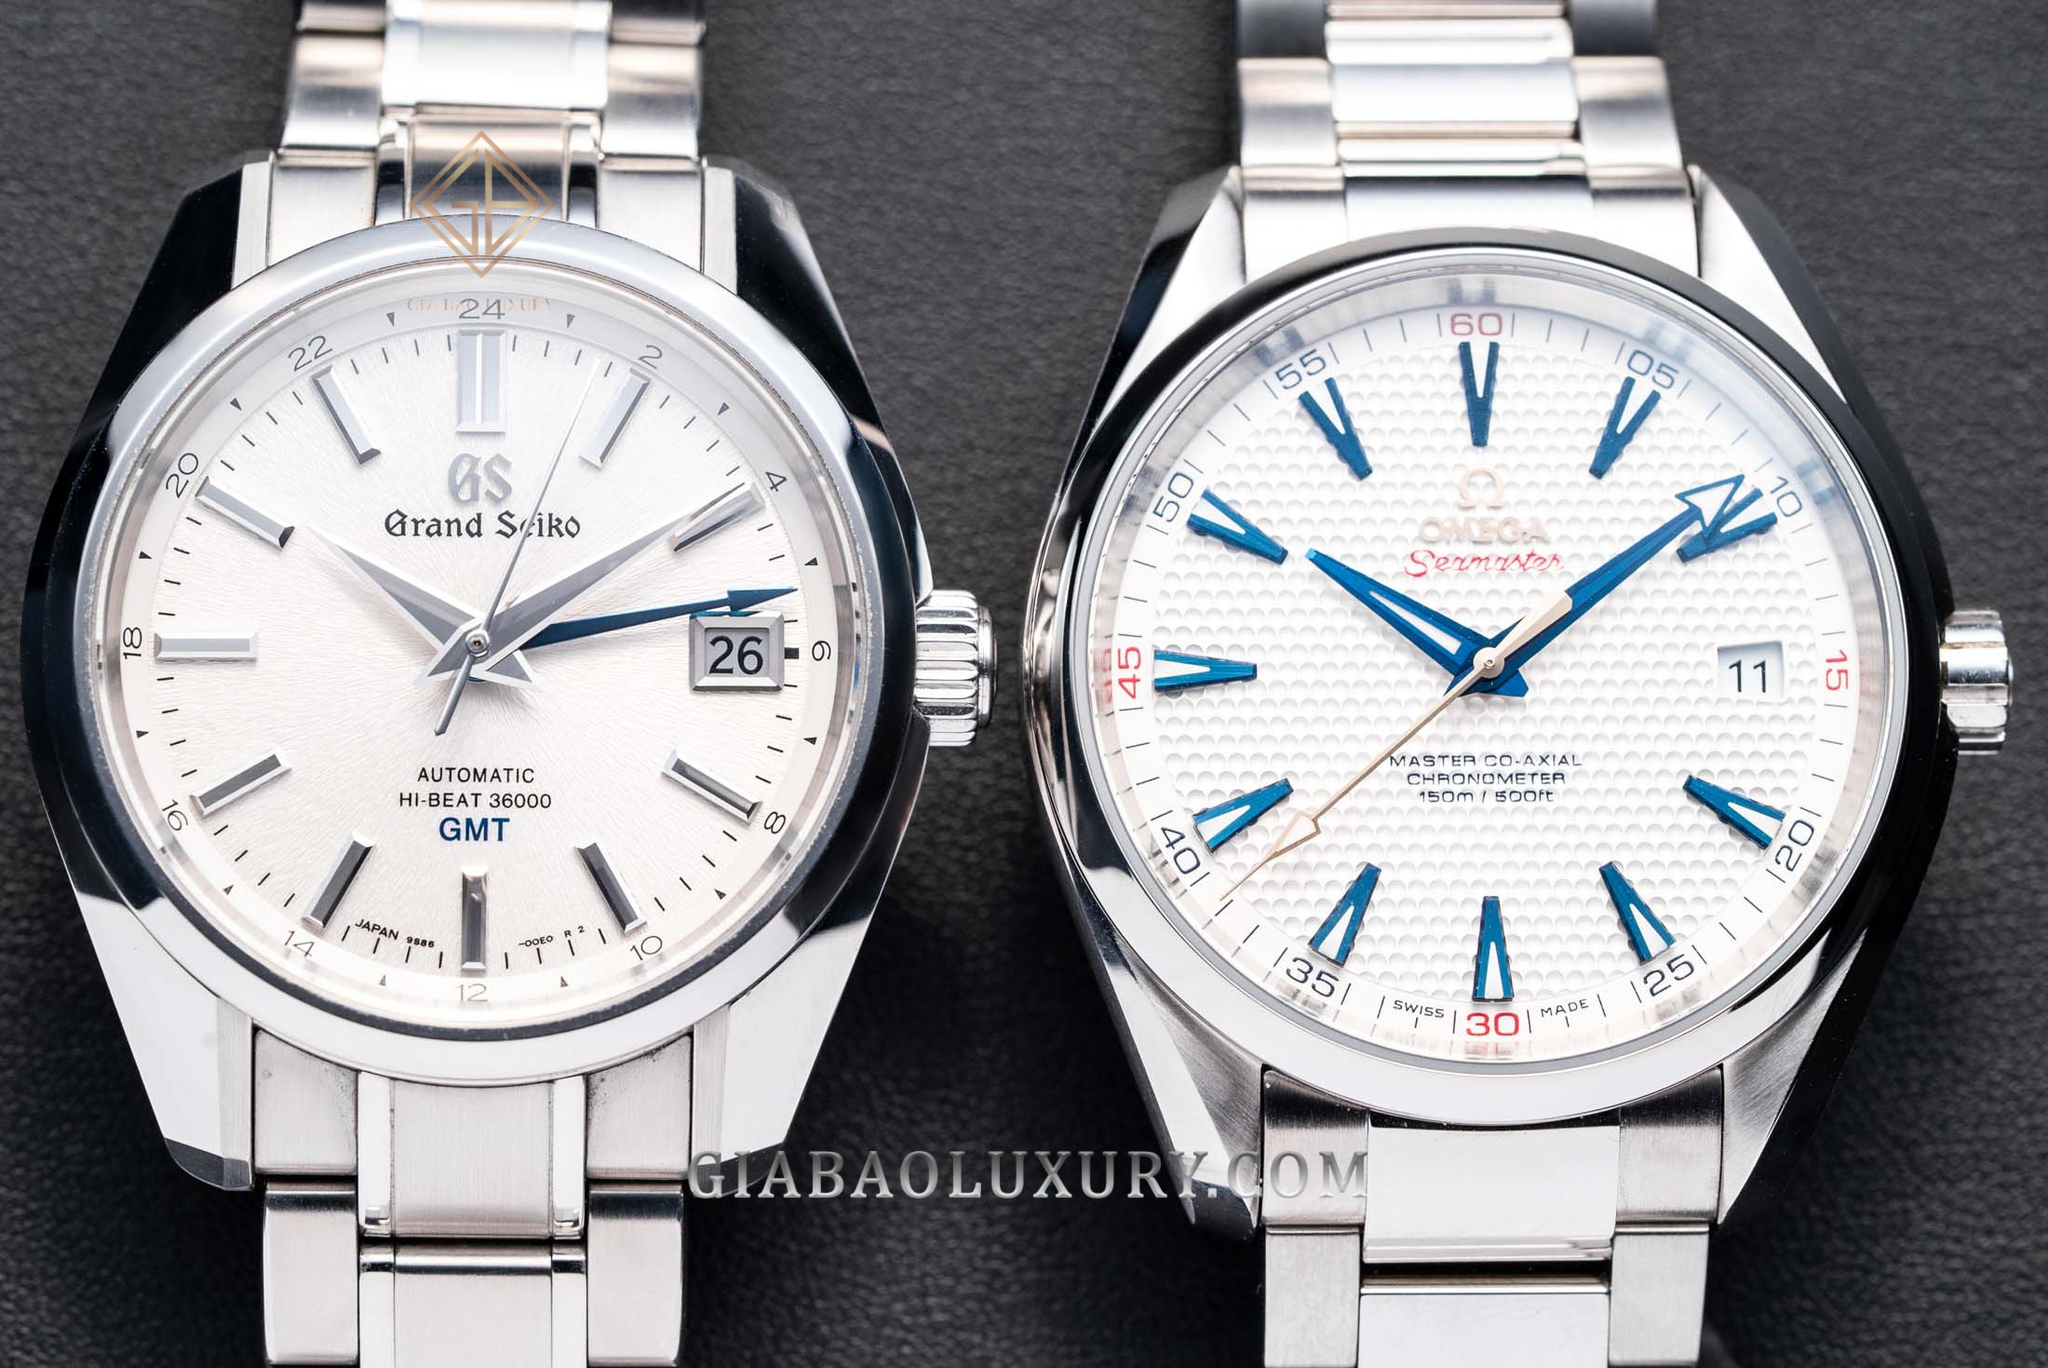 Lựa chọn đồng hồ cho ngày thường của bạn: Omega Aqua Terra hay Grand Seiko Heritage Hi-Beat?